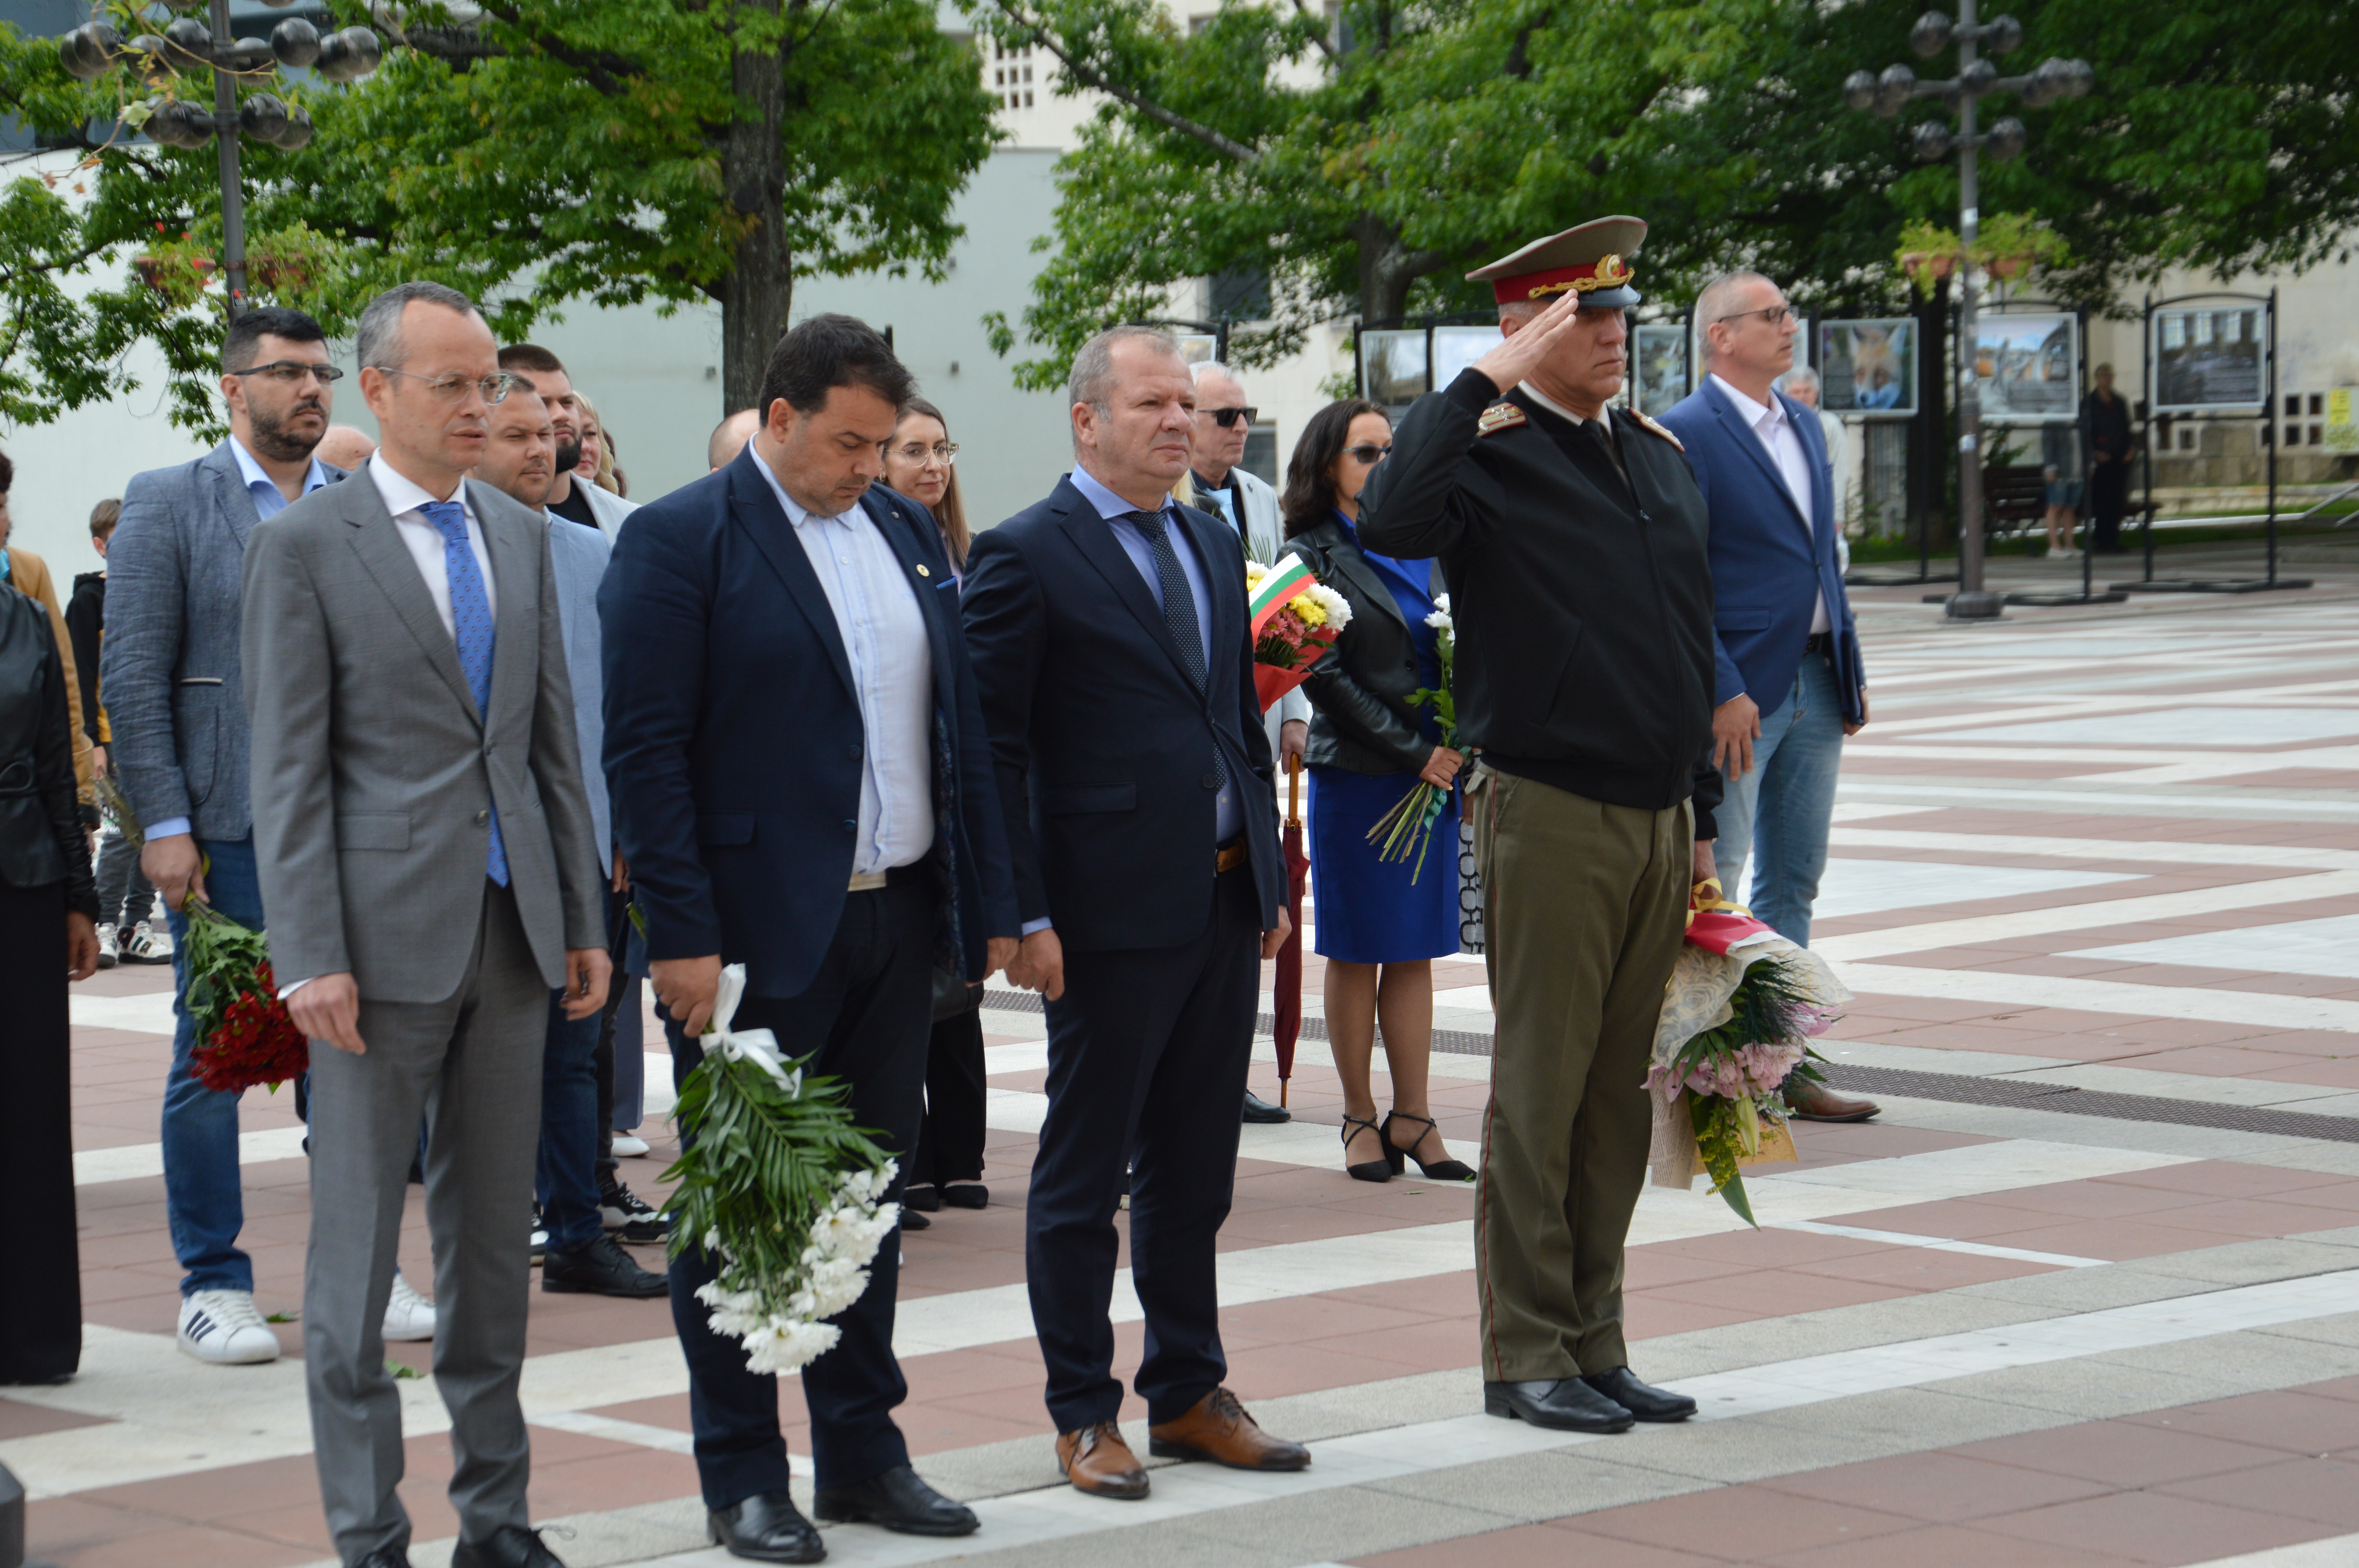 С полагане на цветя и празничен концерт отбелязаха Деня на Европа в Благоевград, кметът Методи Байкушев: Днес честваме Деня на Европа, защото едни мъдри хора избраха прошката пред отмъщението